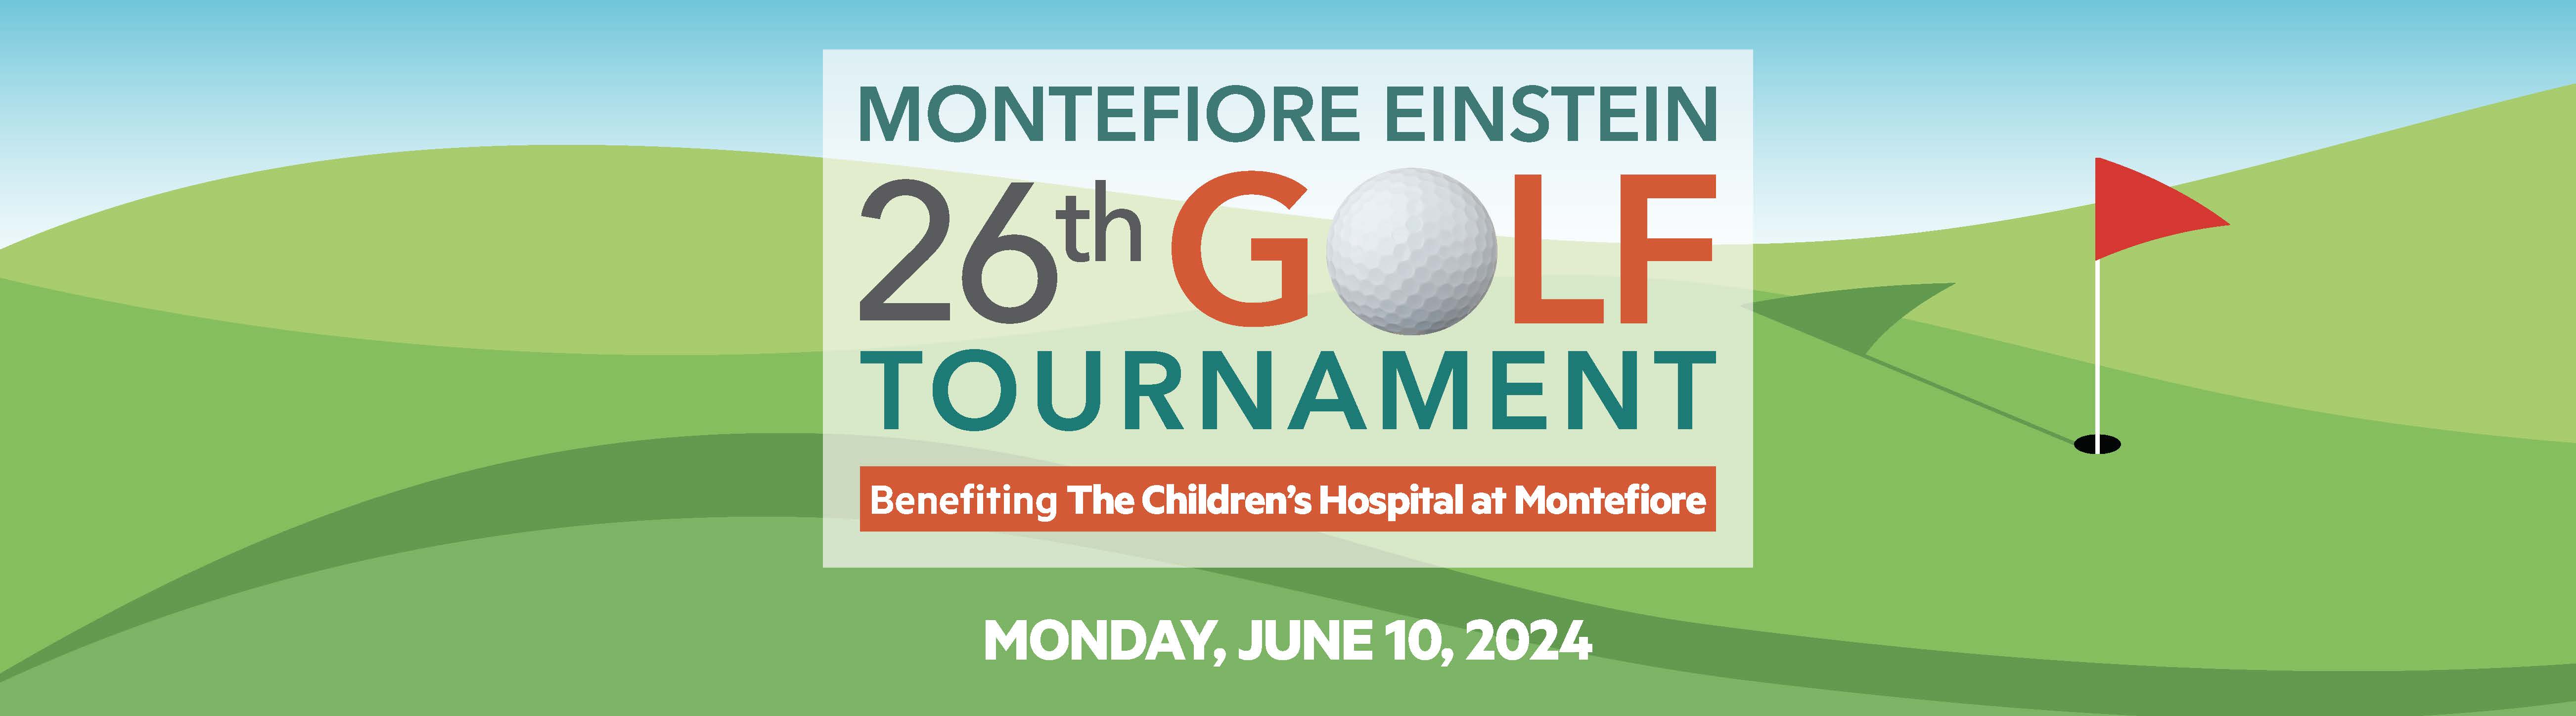 26th Montefiore Einstein Golf Tournament